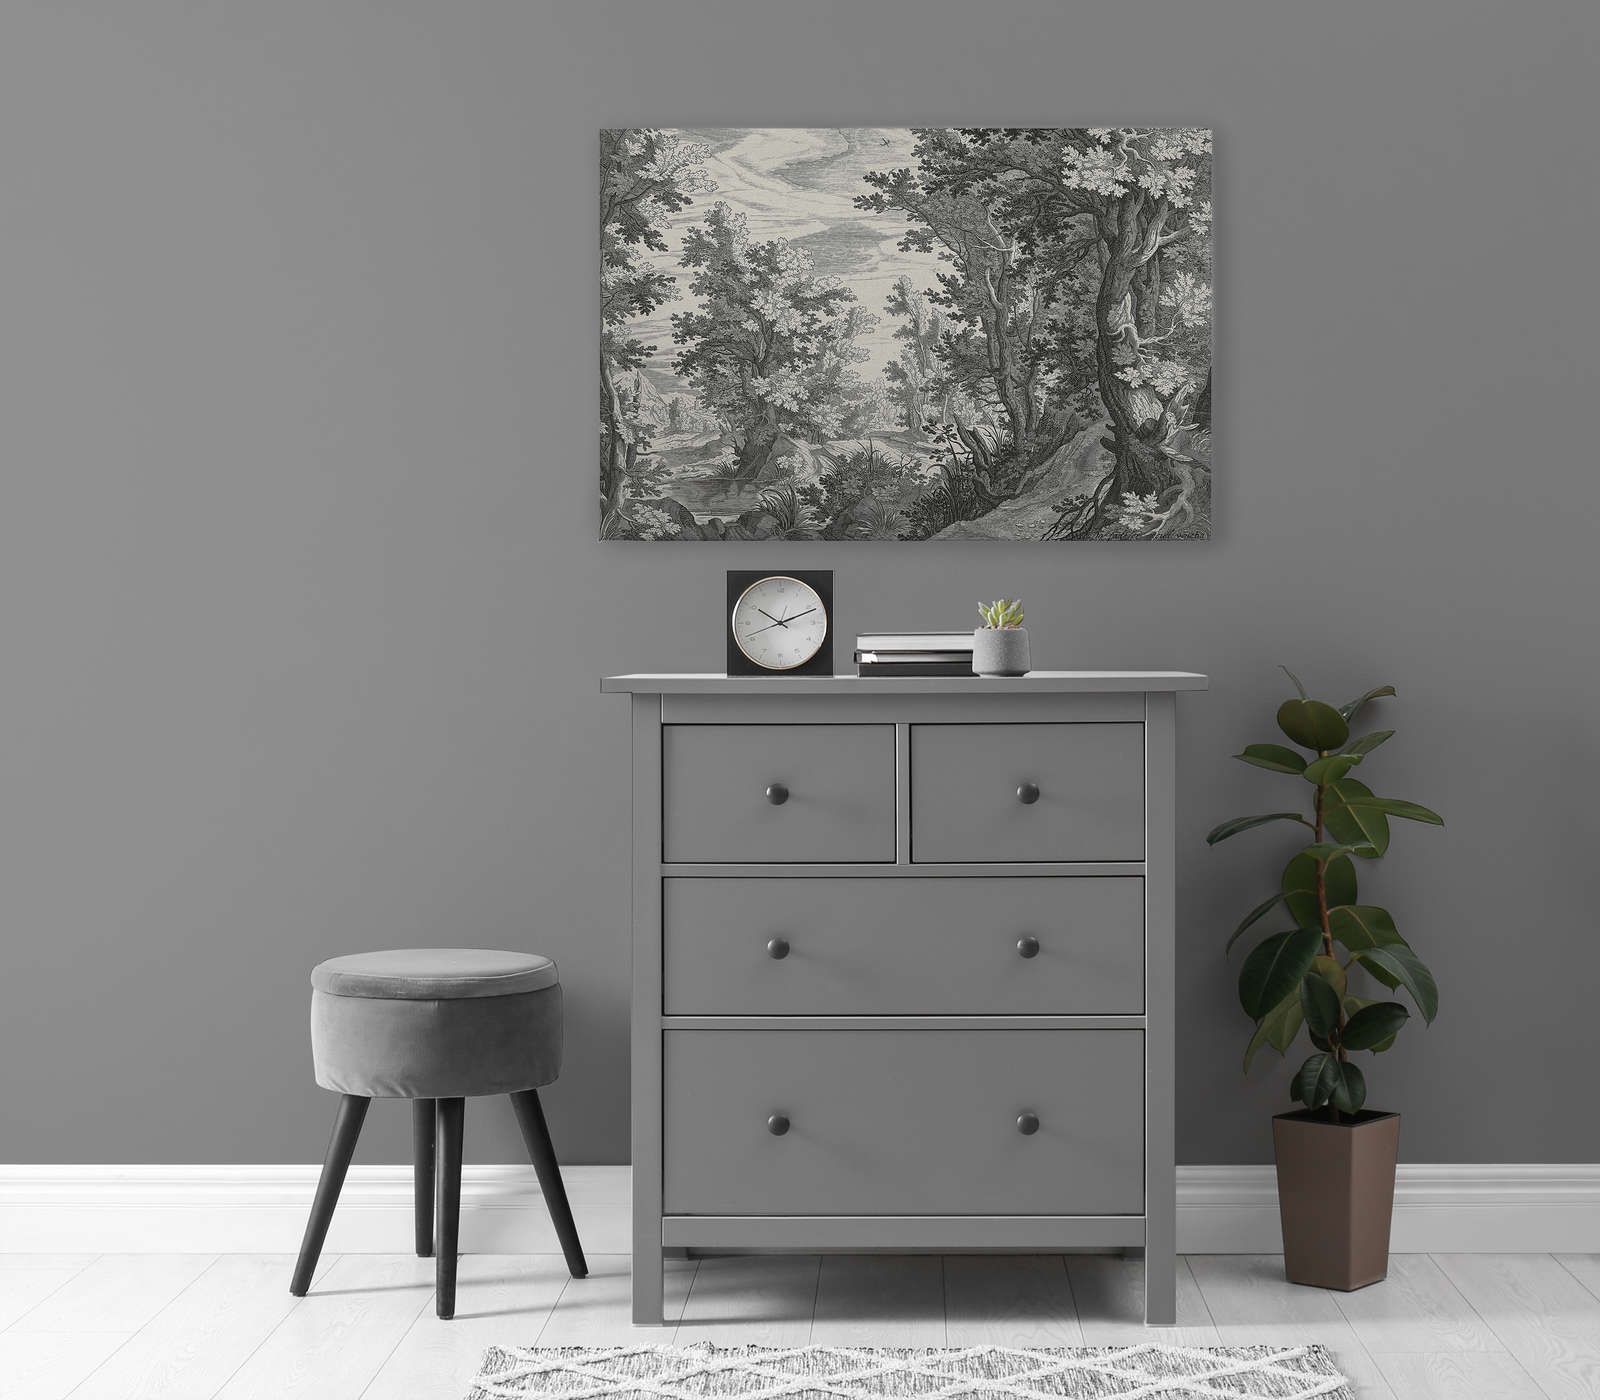             Fancy Forest 3 - Quadro su tela Paesaggio ramato in bianco e nero - 0,90 m x 0,60 m
        